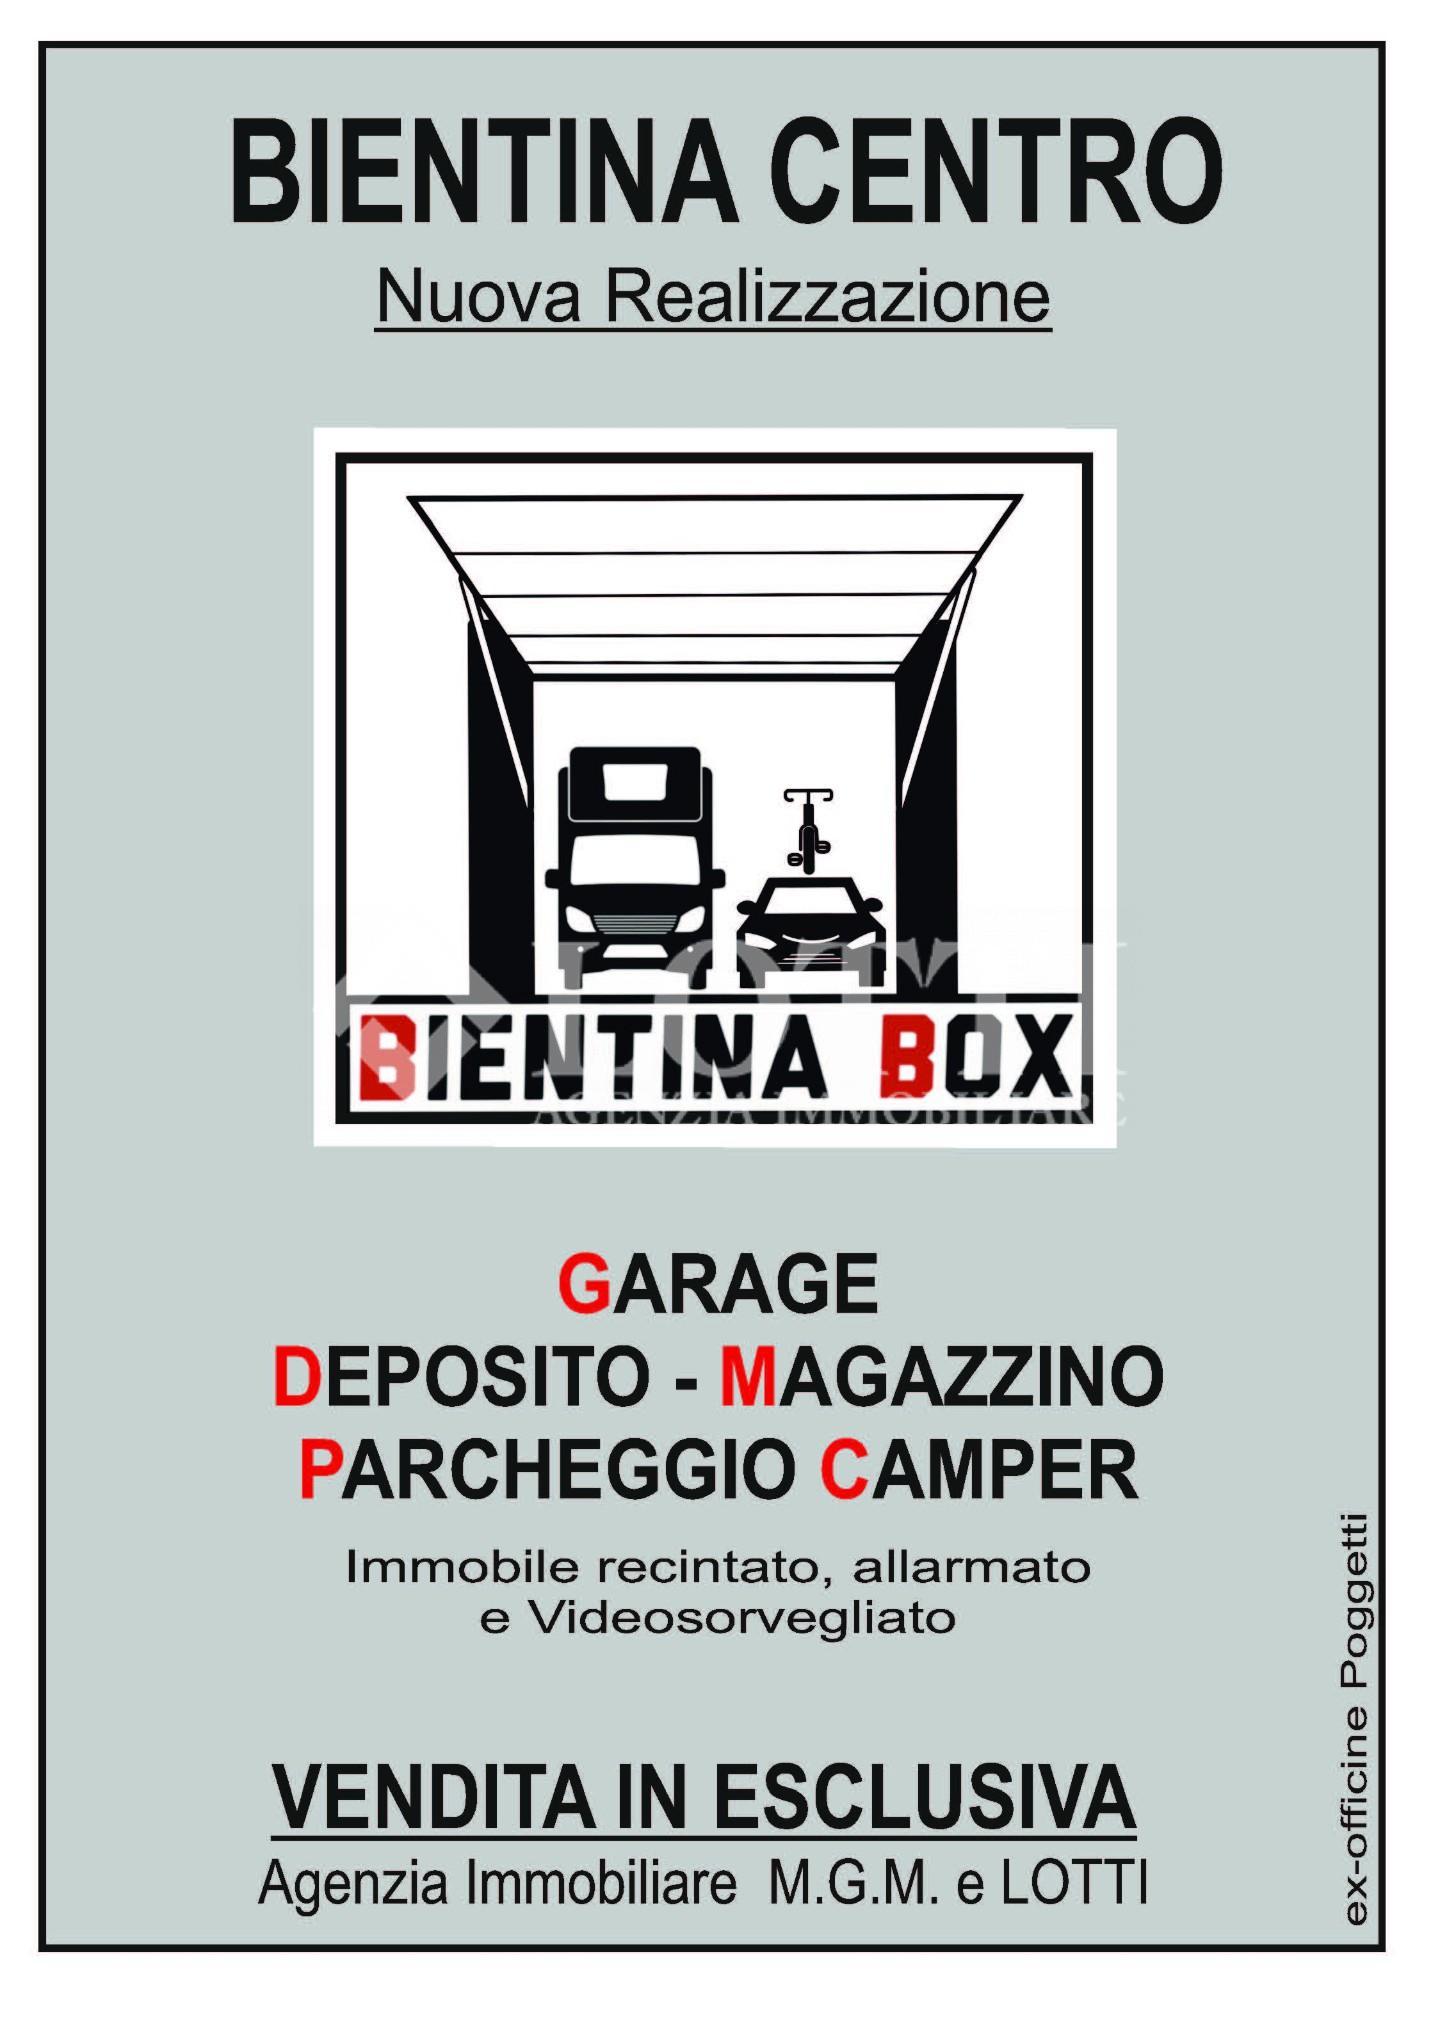 Garage for sale in Bientina (PI)